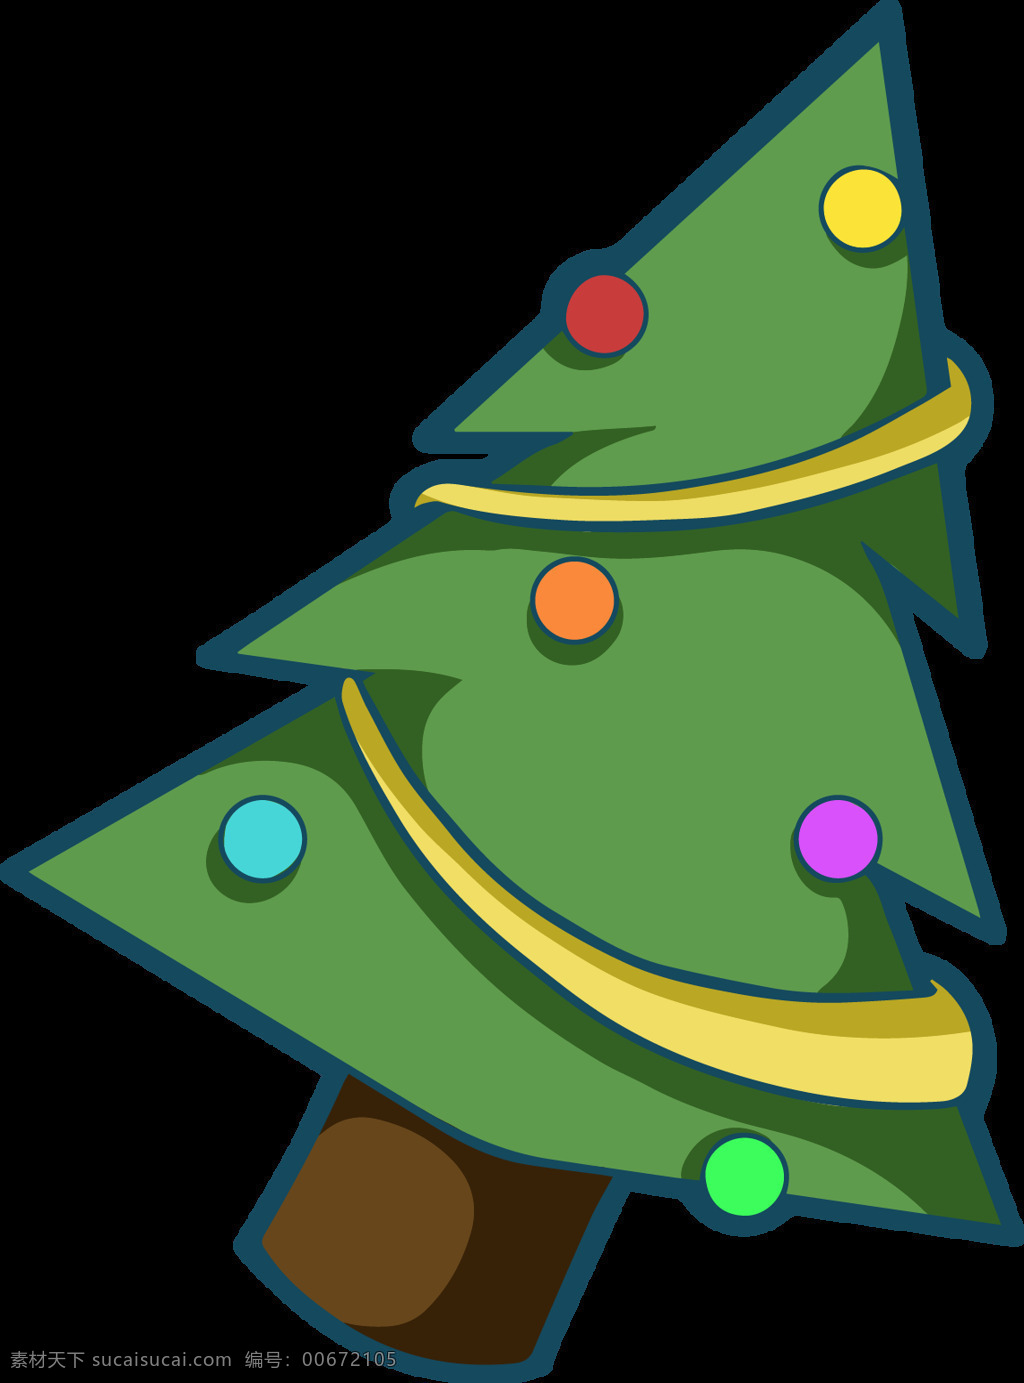 卡通 倾斜 圣诞树 元素 绿色元素 圣诞树下载 卡通圣诞树 倾斜素材 圣诞快乐 圣诞 设计素材 merry christmas 圣诞素材 卡通圣诞元素